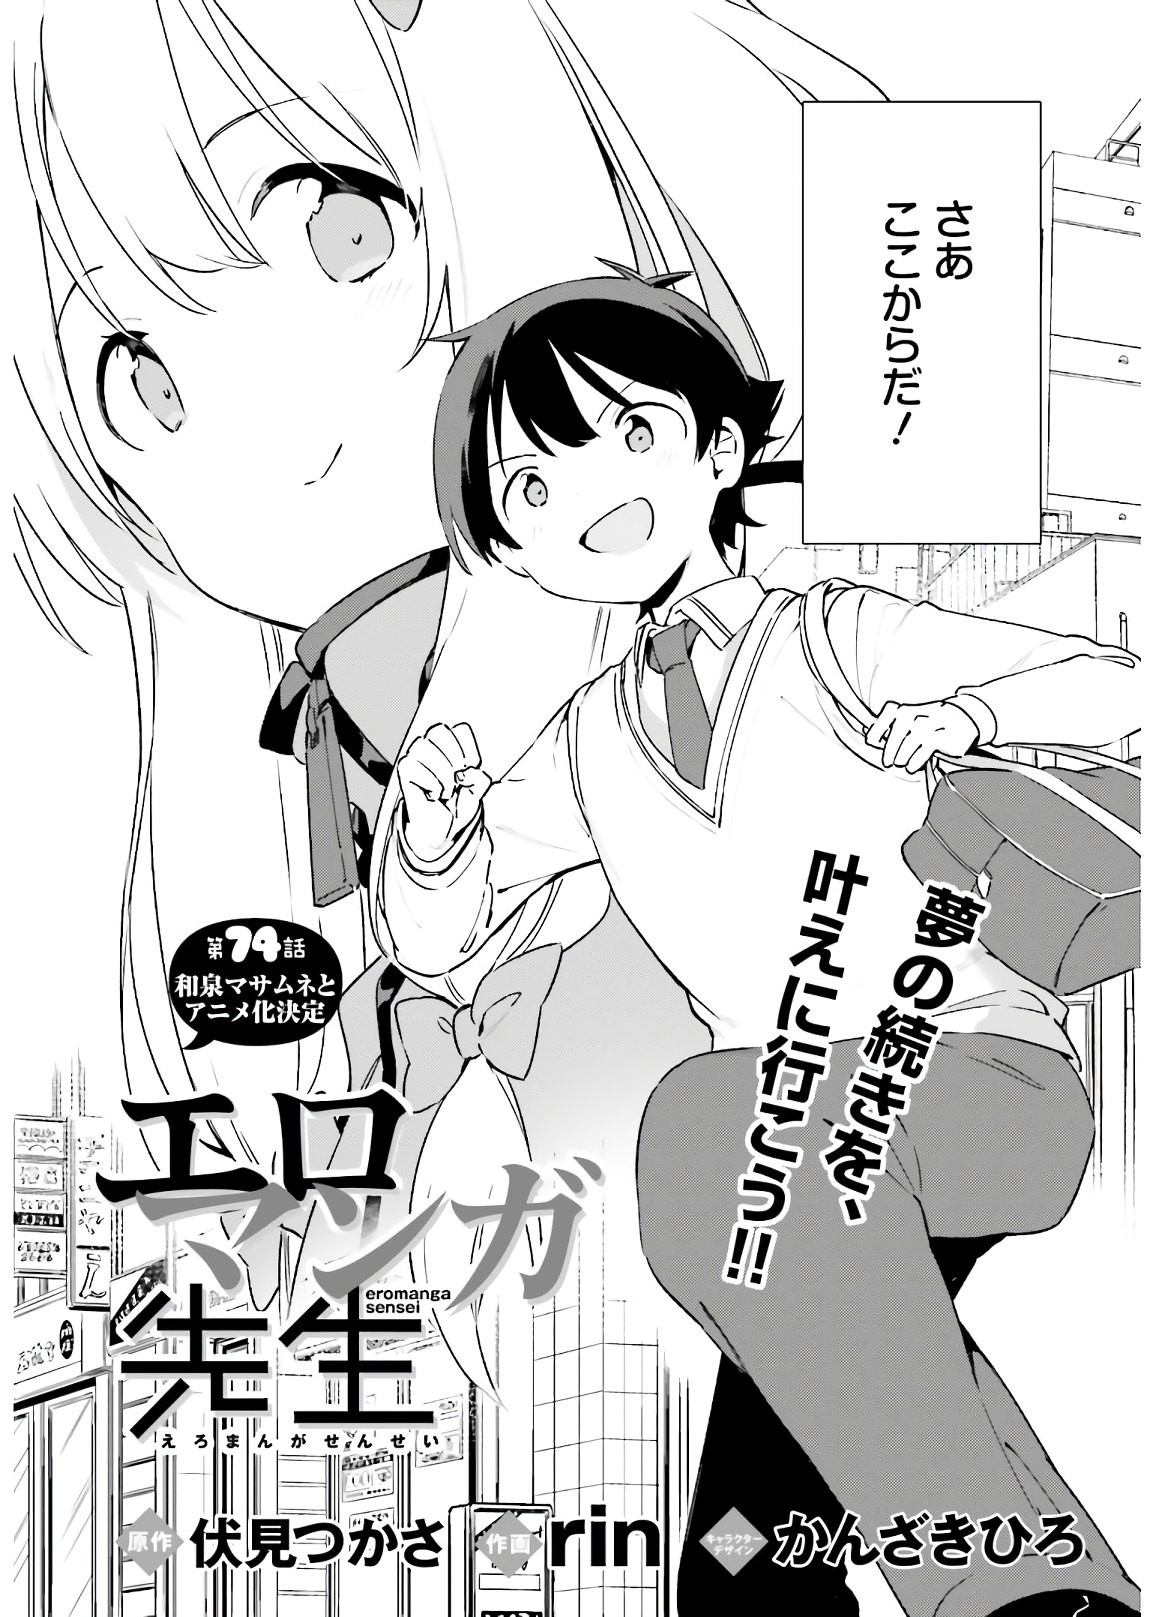 Ero Manga Sensei - Chapter 74 - Page 3